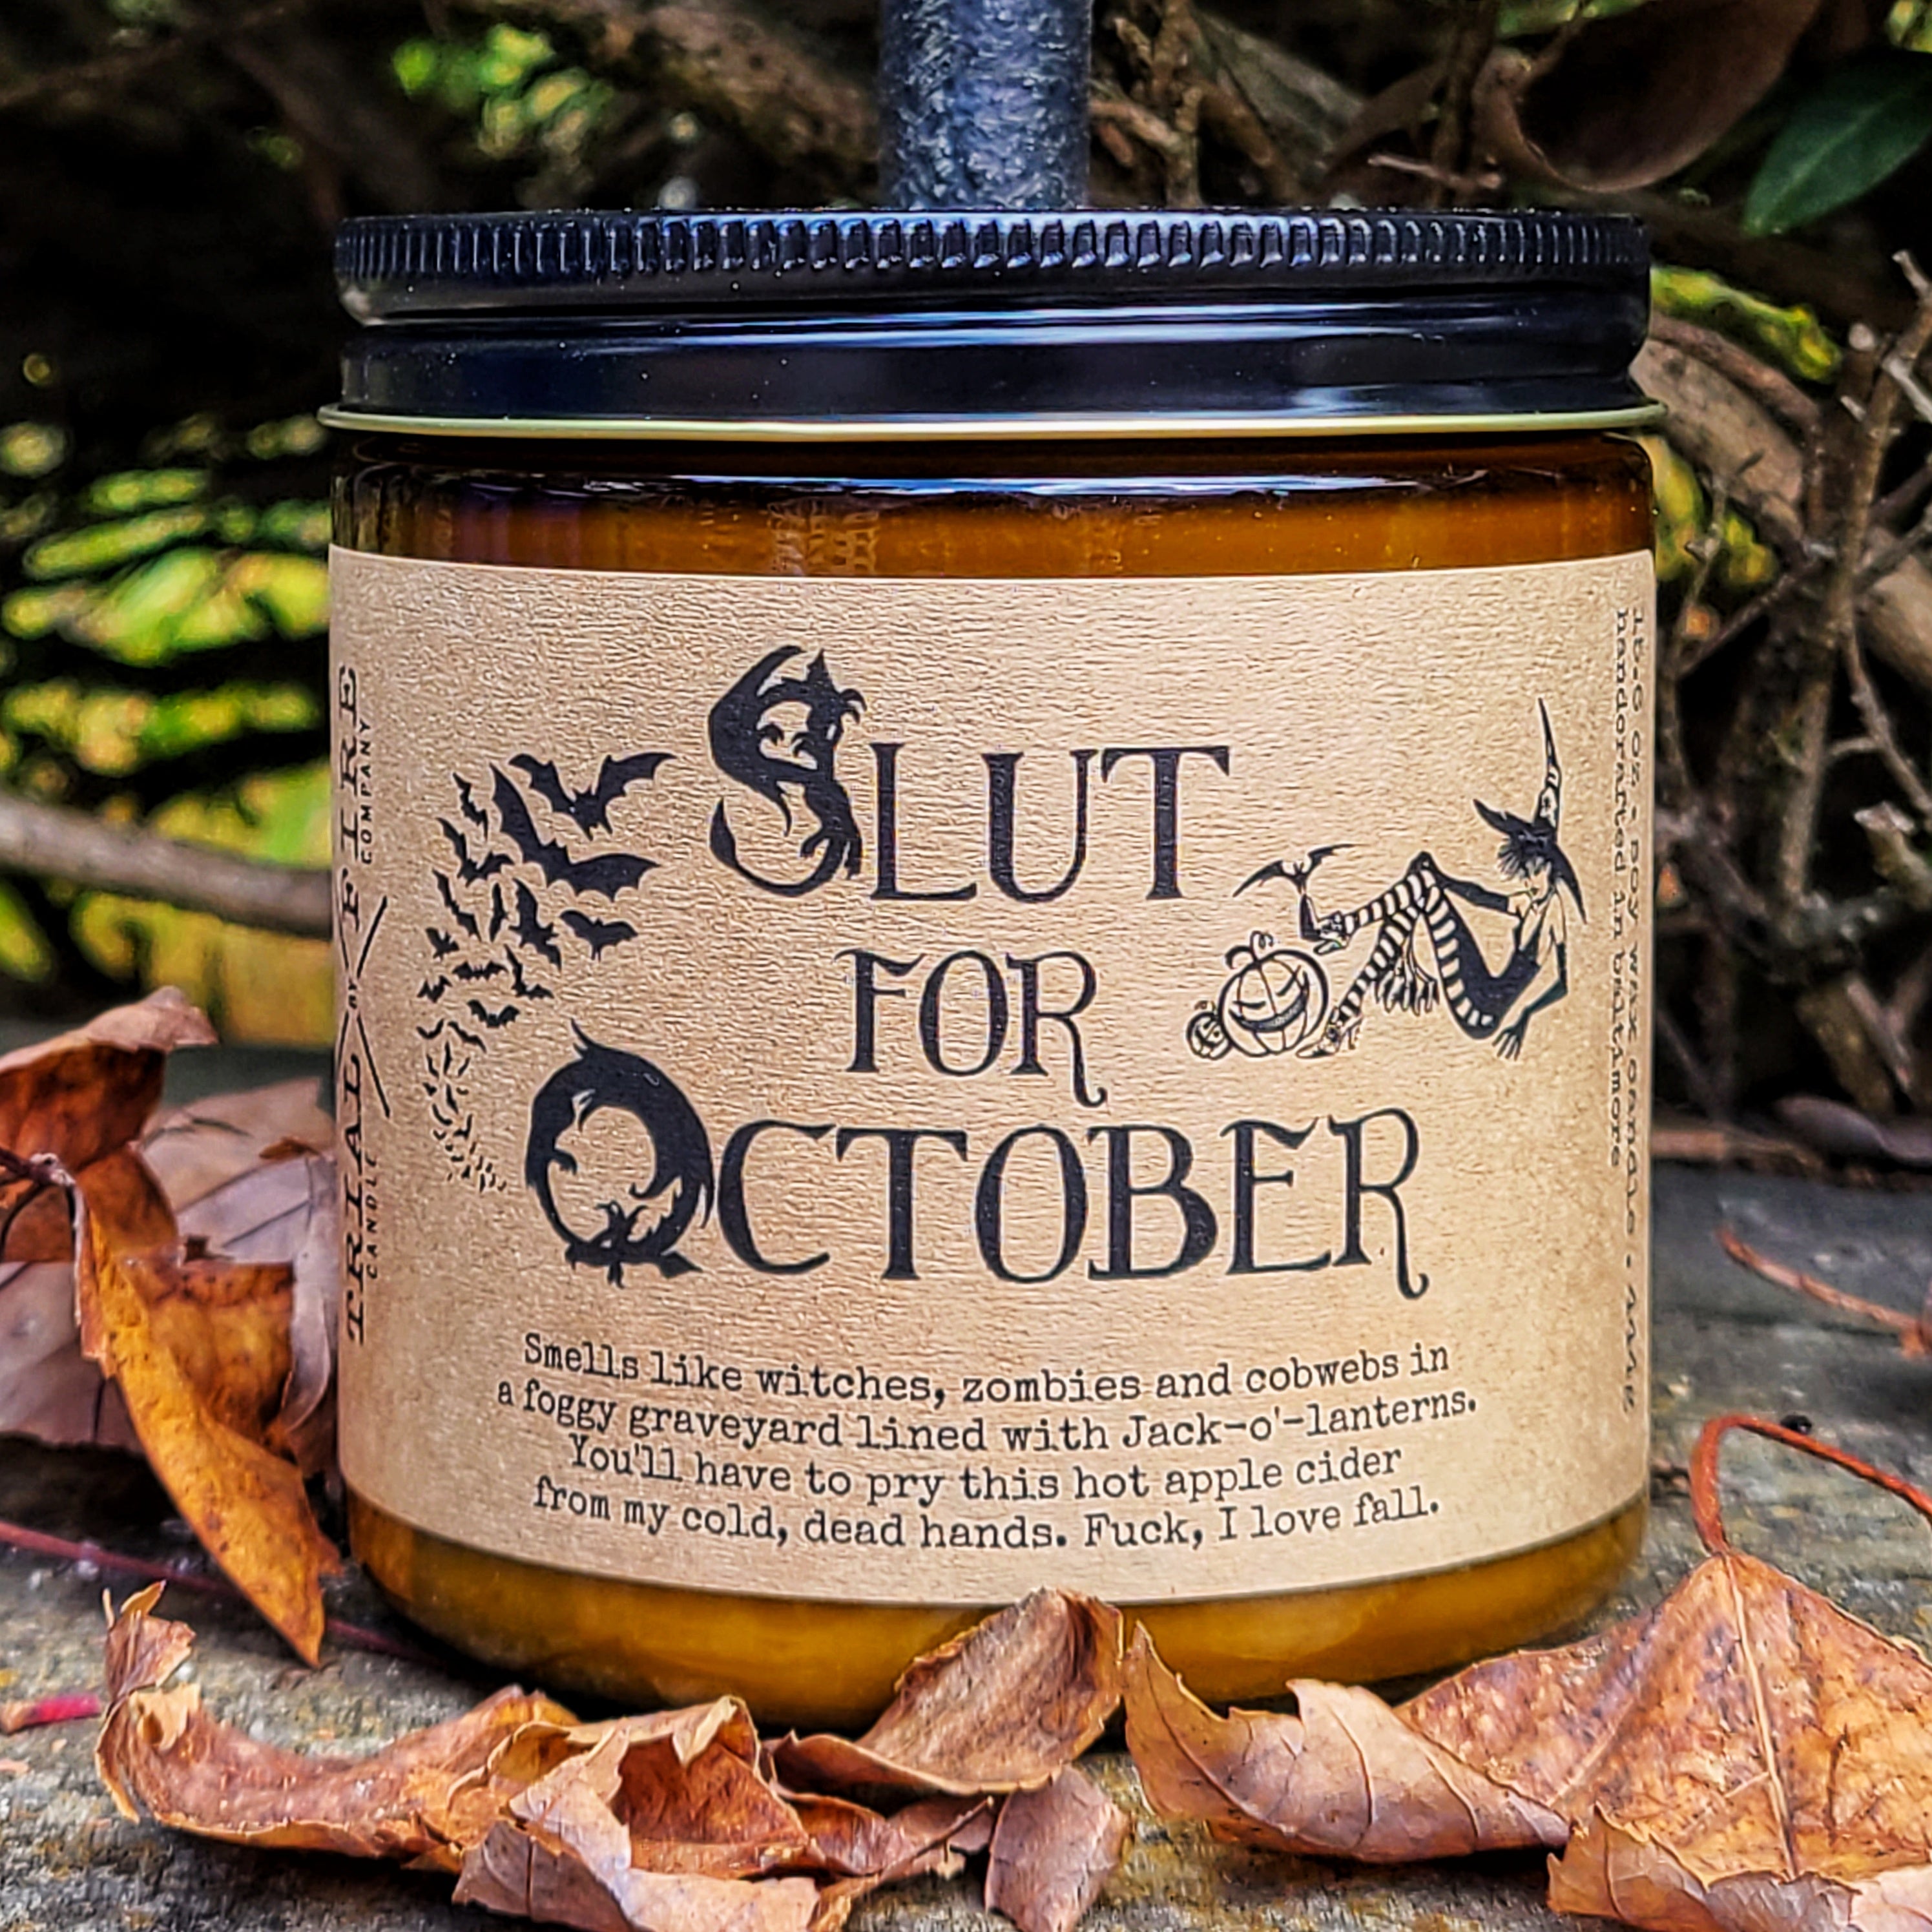 Slut for October